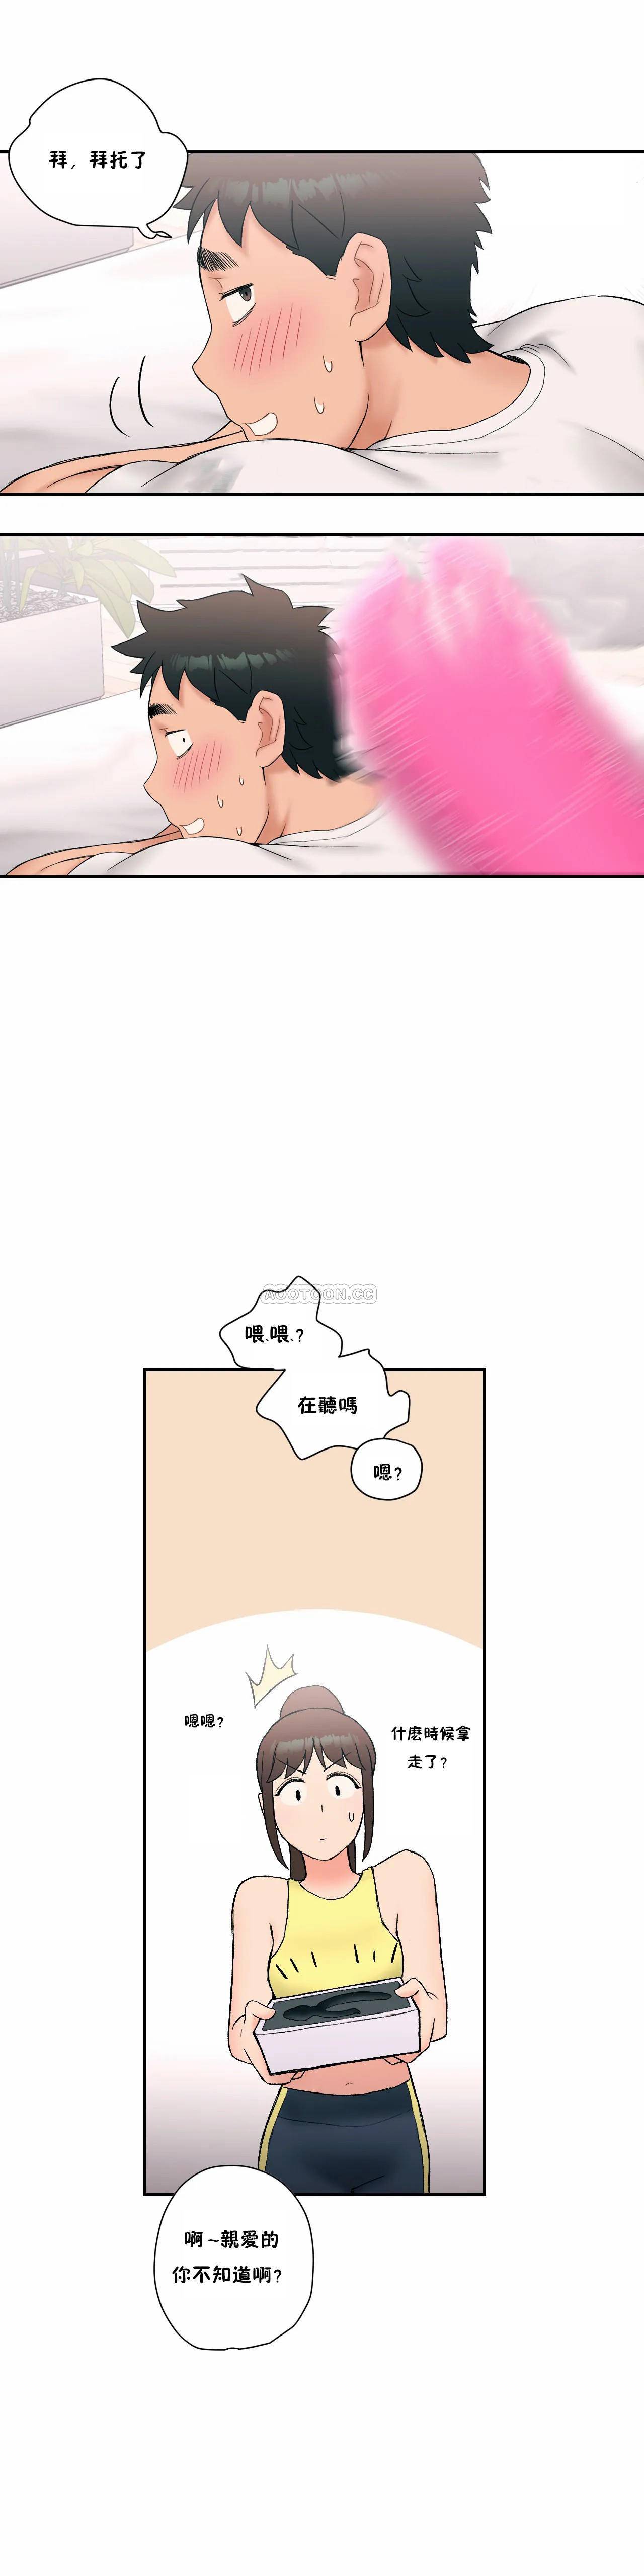 韩国污漫画 非常運動 第11话 18